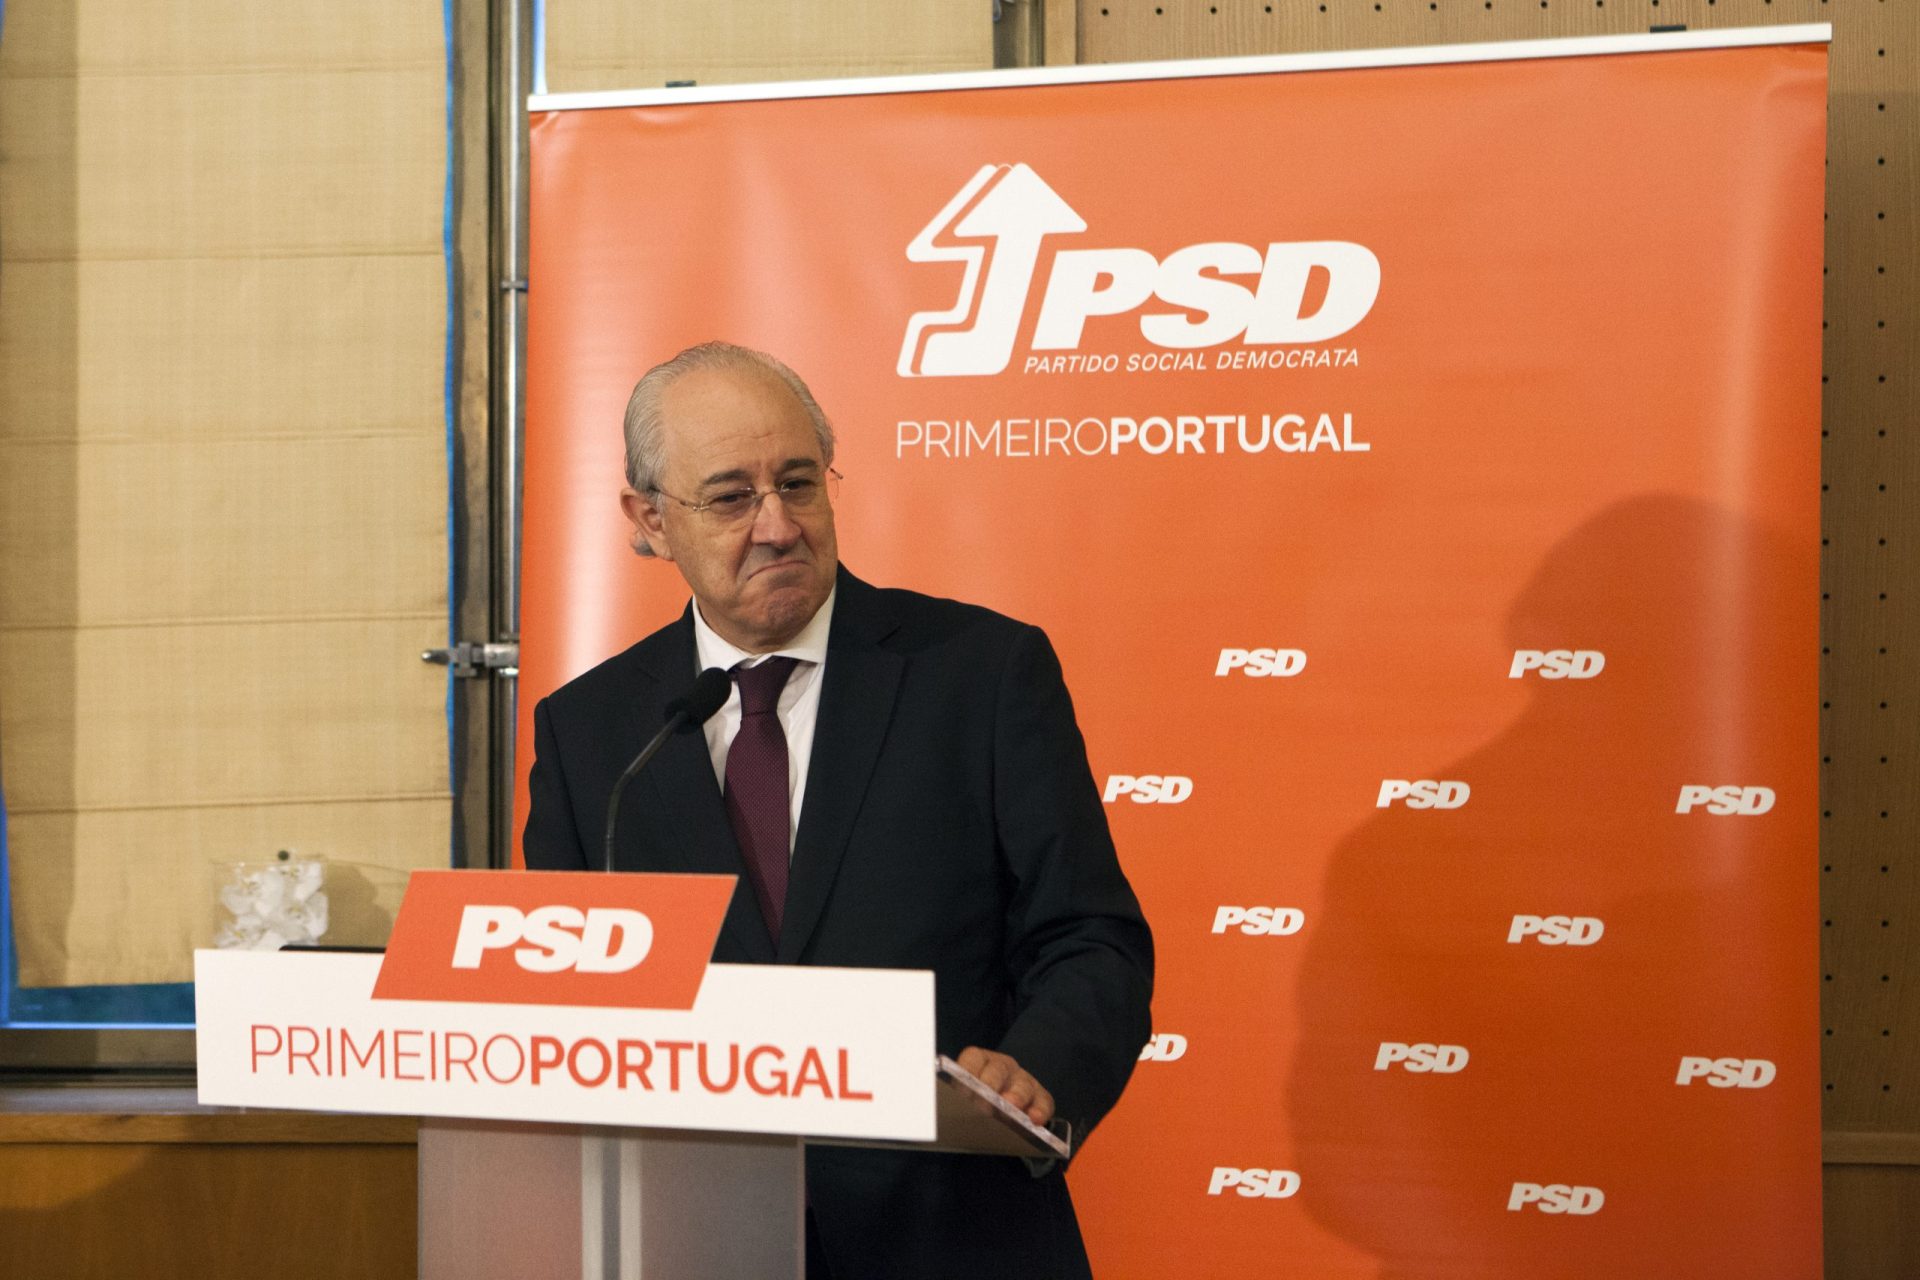 Líder do PSD aposta em campanha ambiental e distribui lápis em vez de canetas